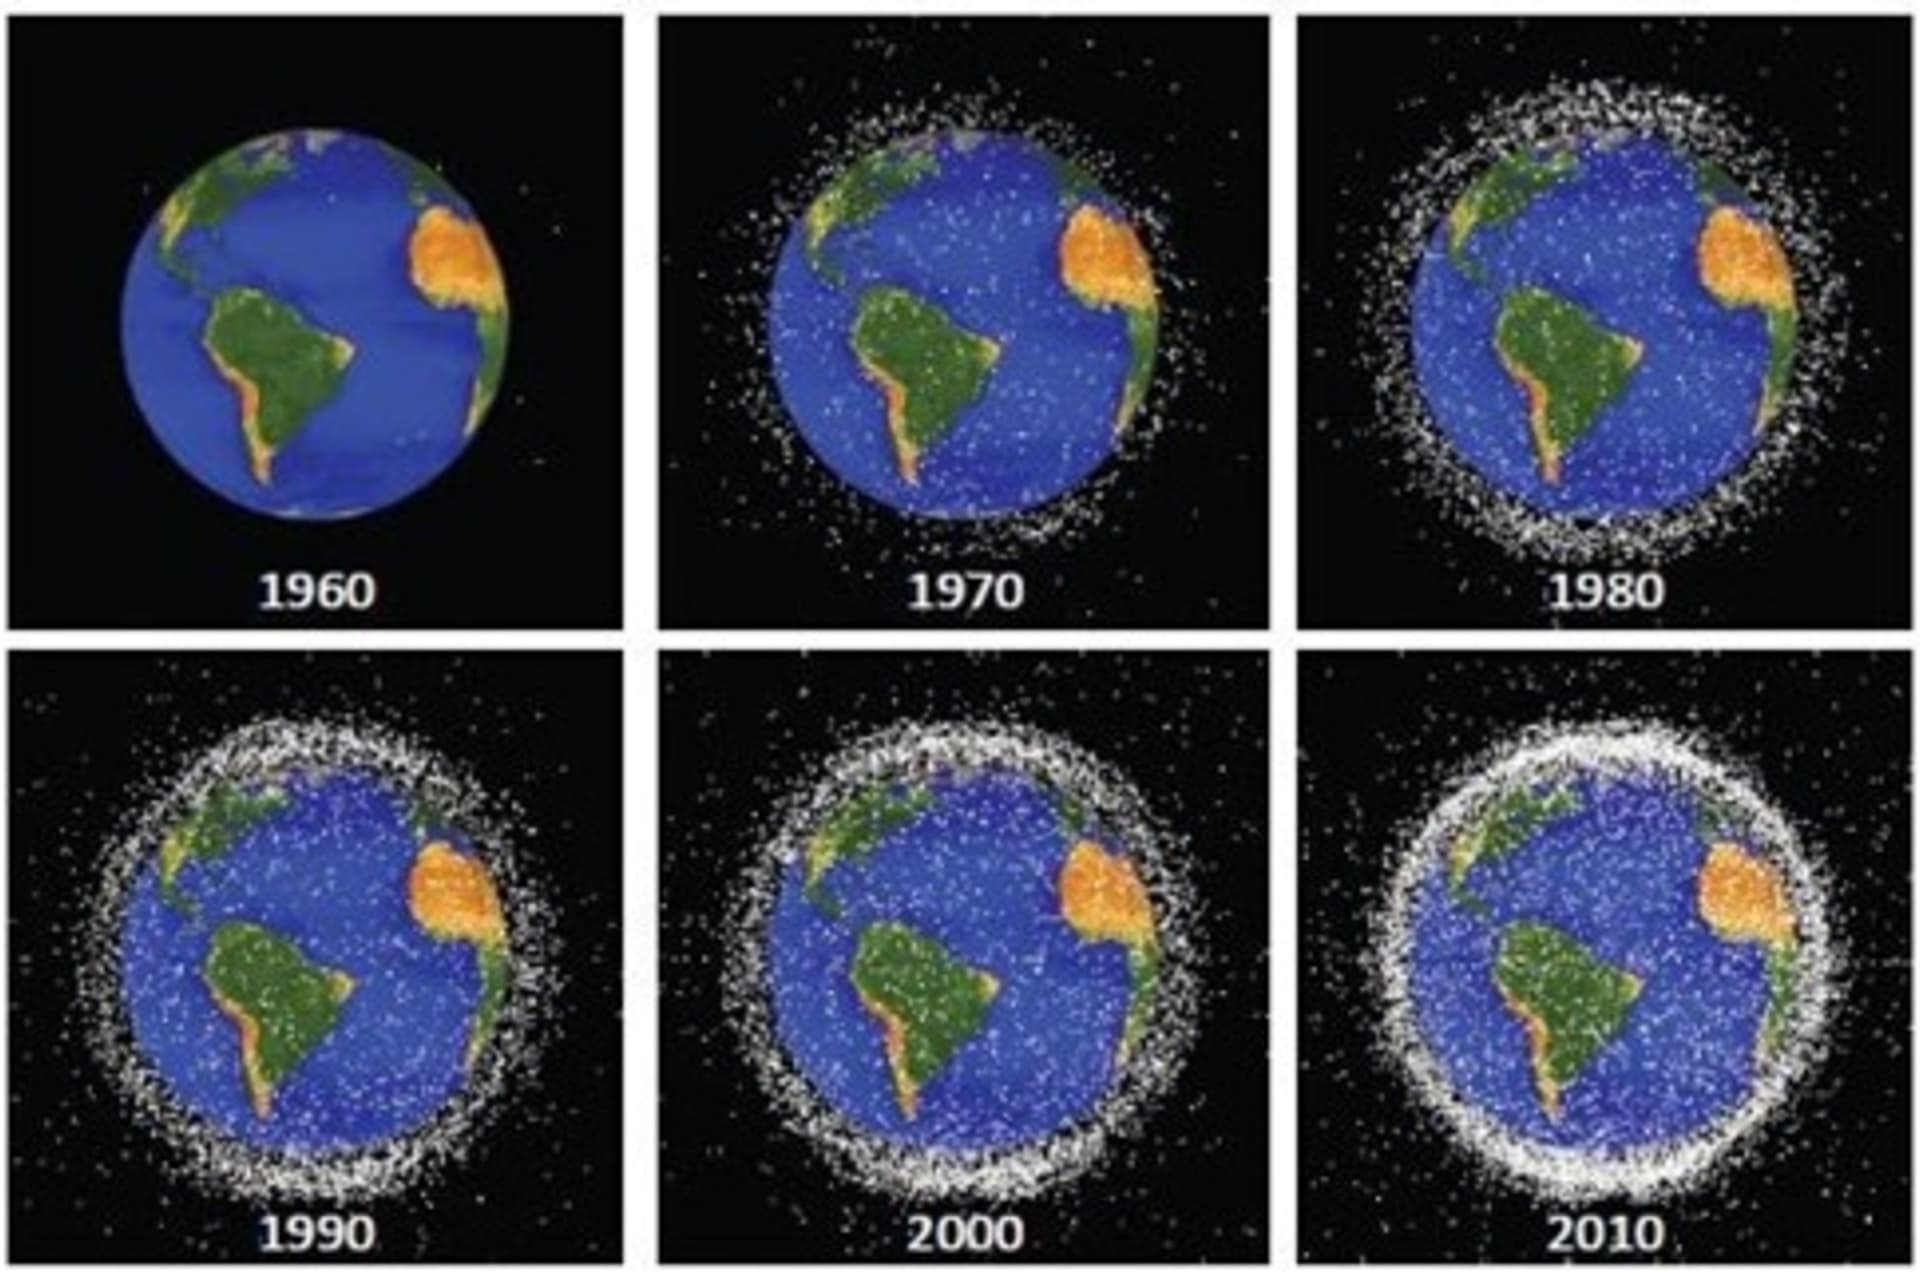 Družice a kosmické smetí na nízké oběžné dráze kolem Země v letech 1960-2010.